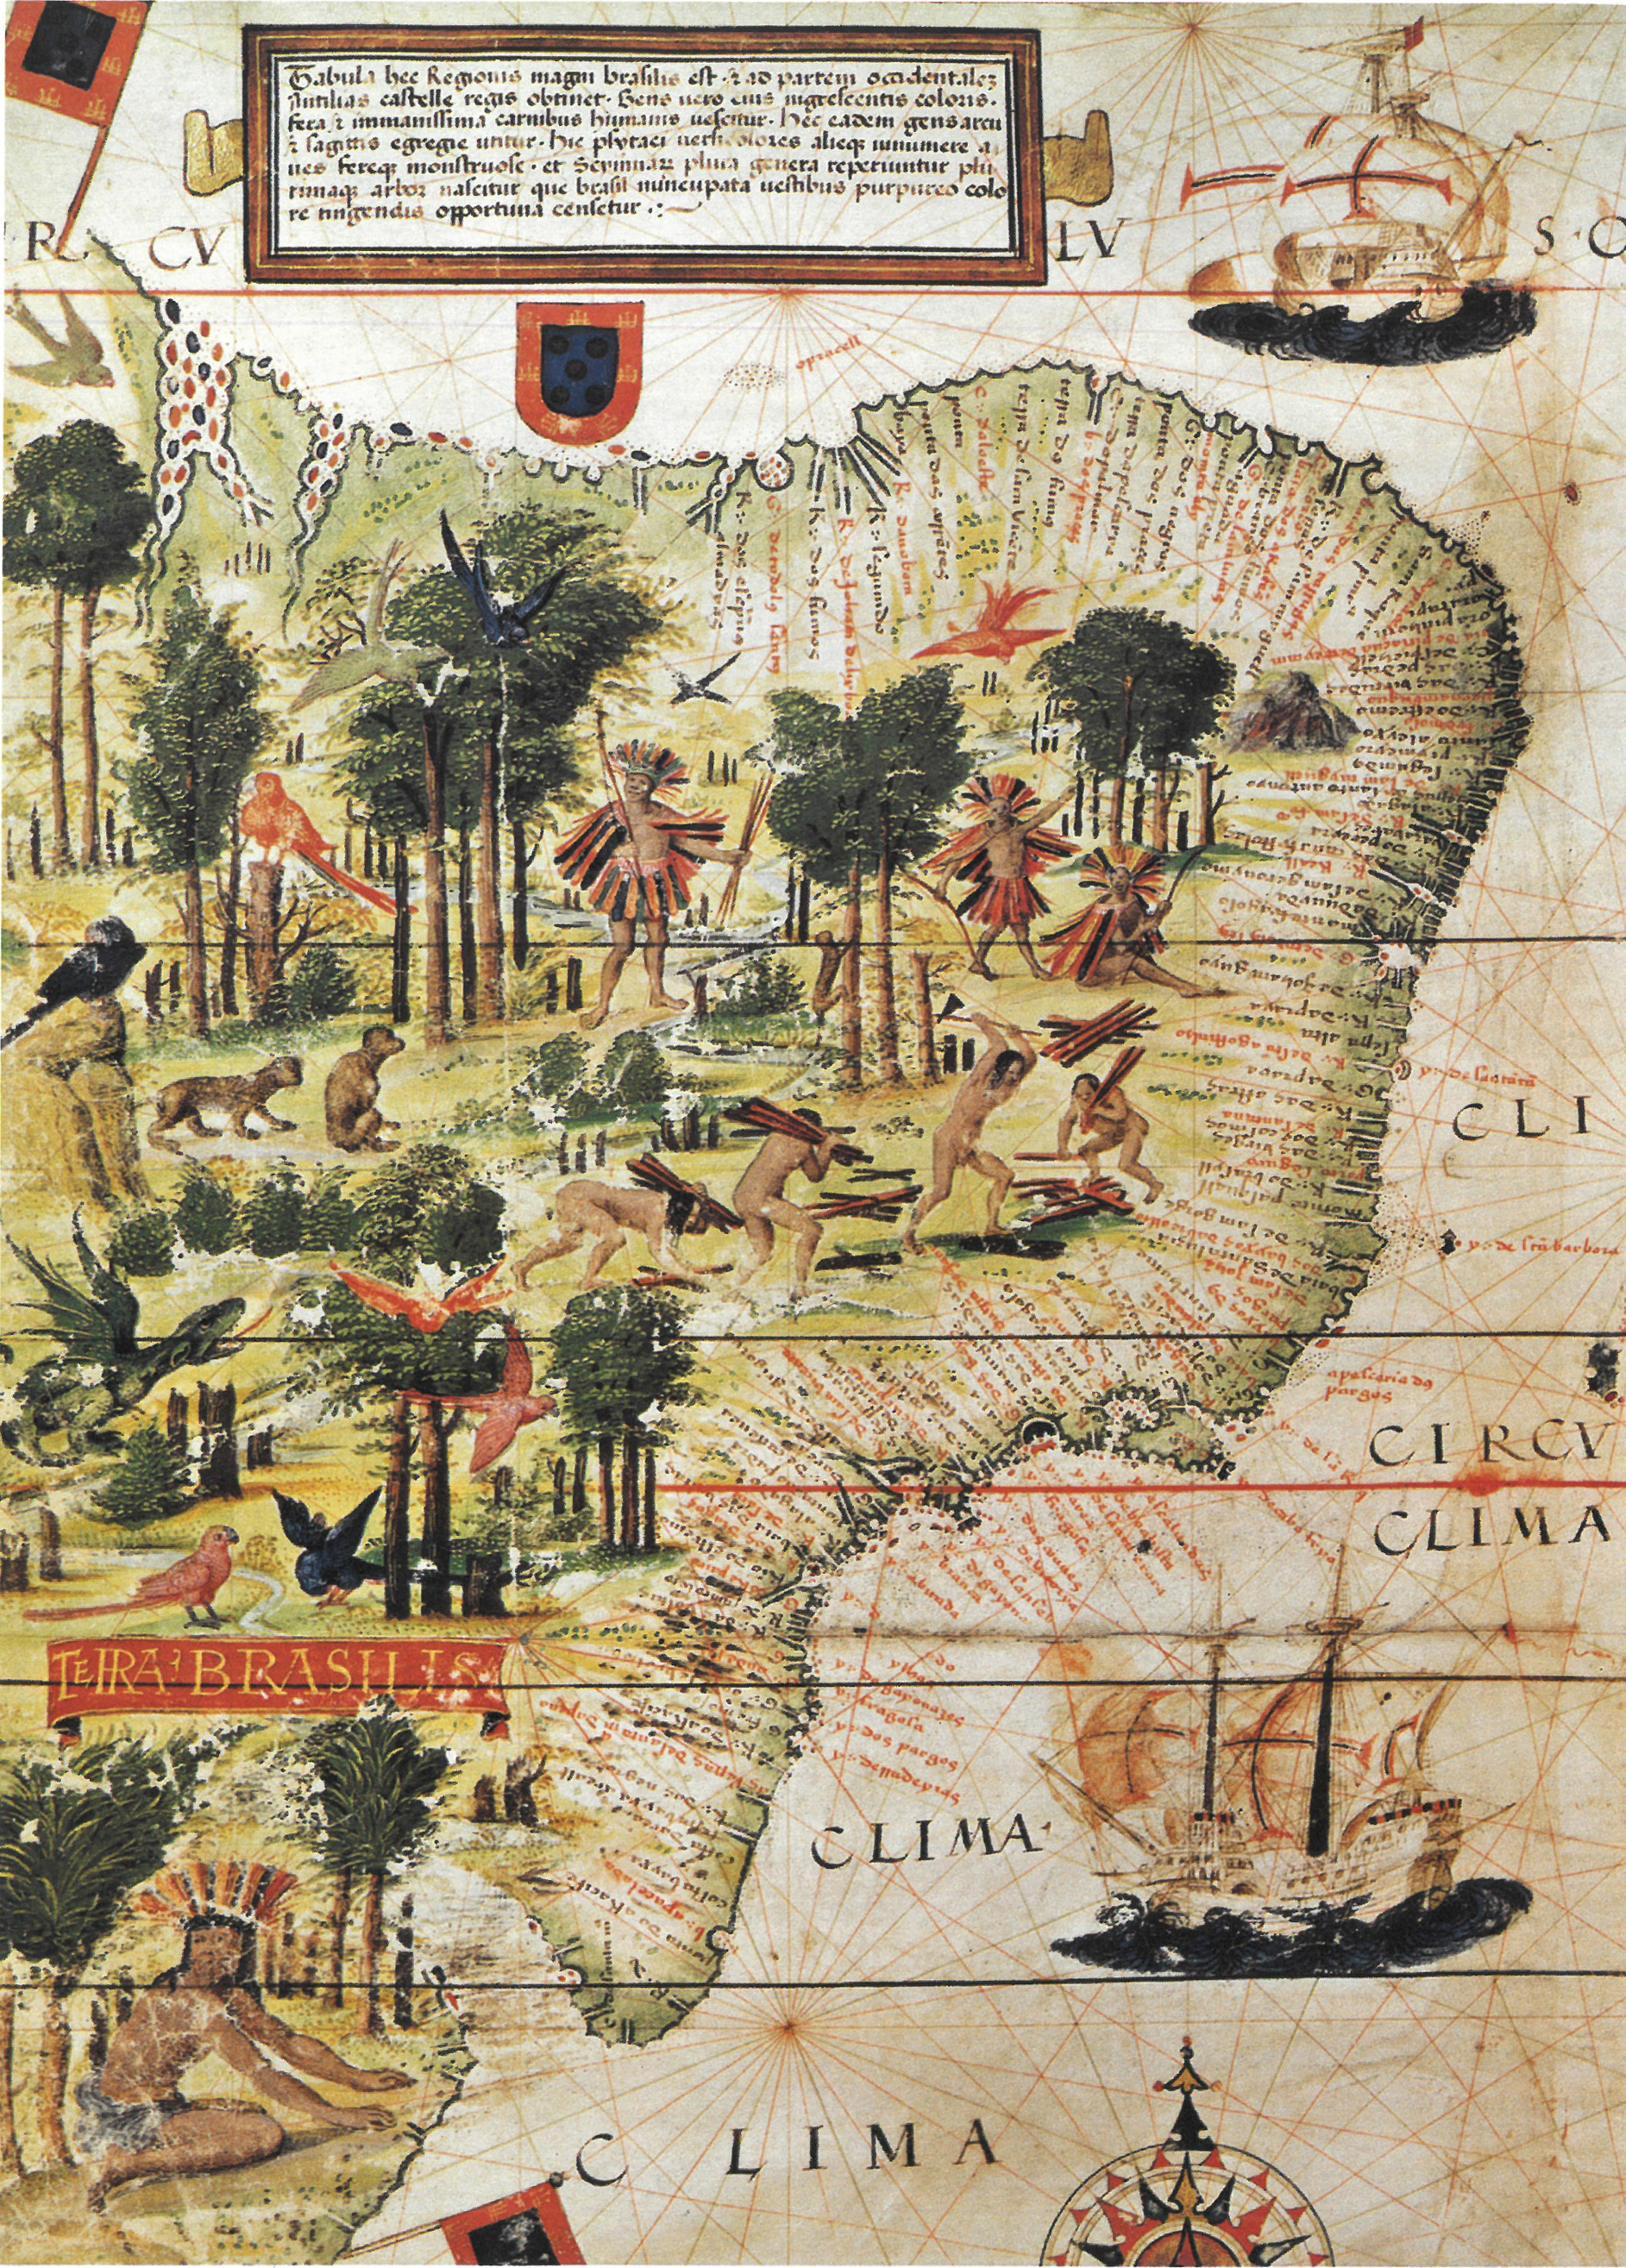 (1) Terra Brasilis. Lopo Homem. Acervo da Fundação Biblioteca Nacional - Brasil